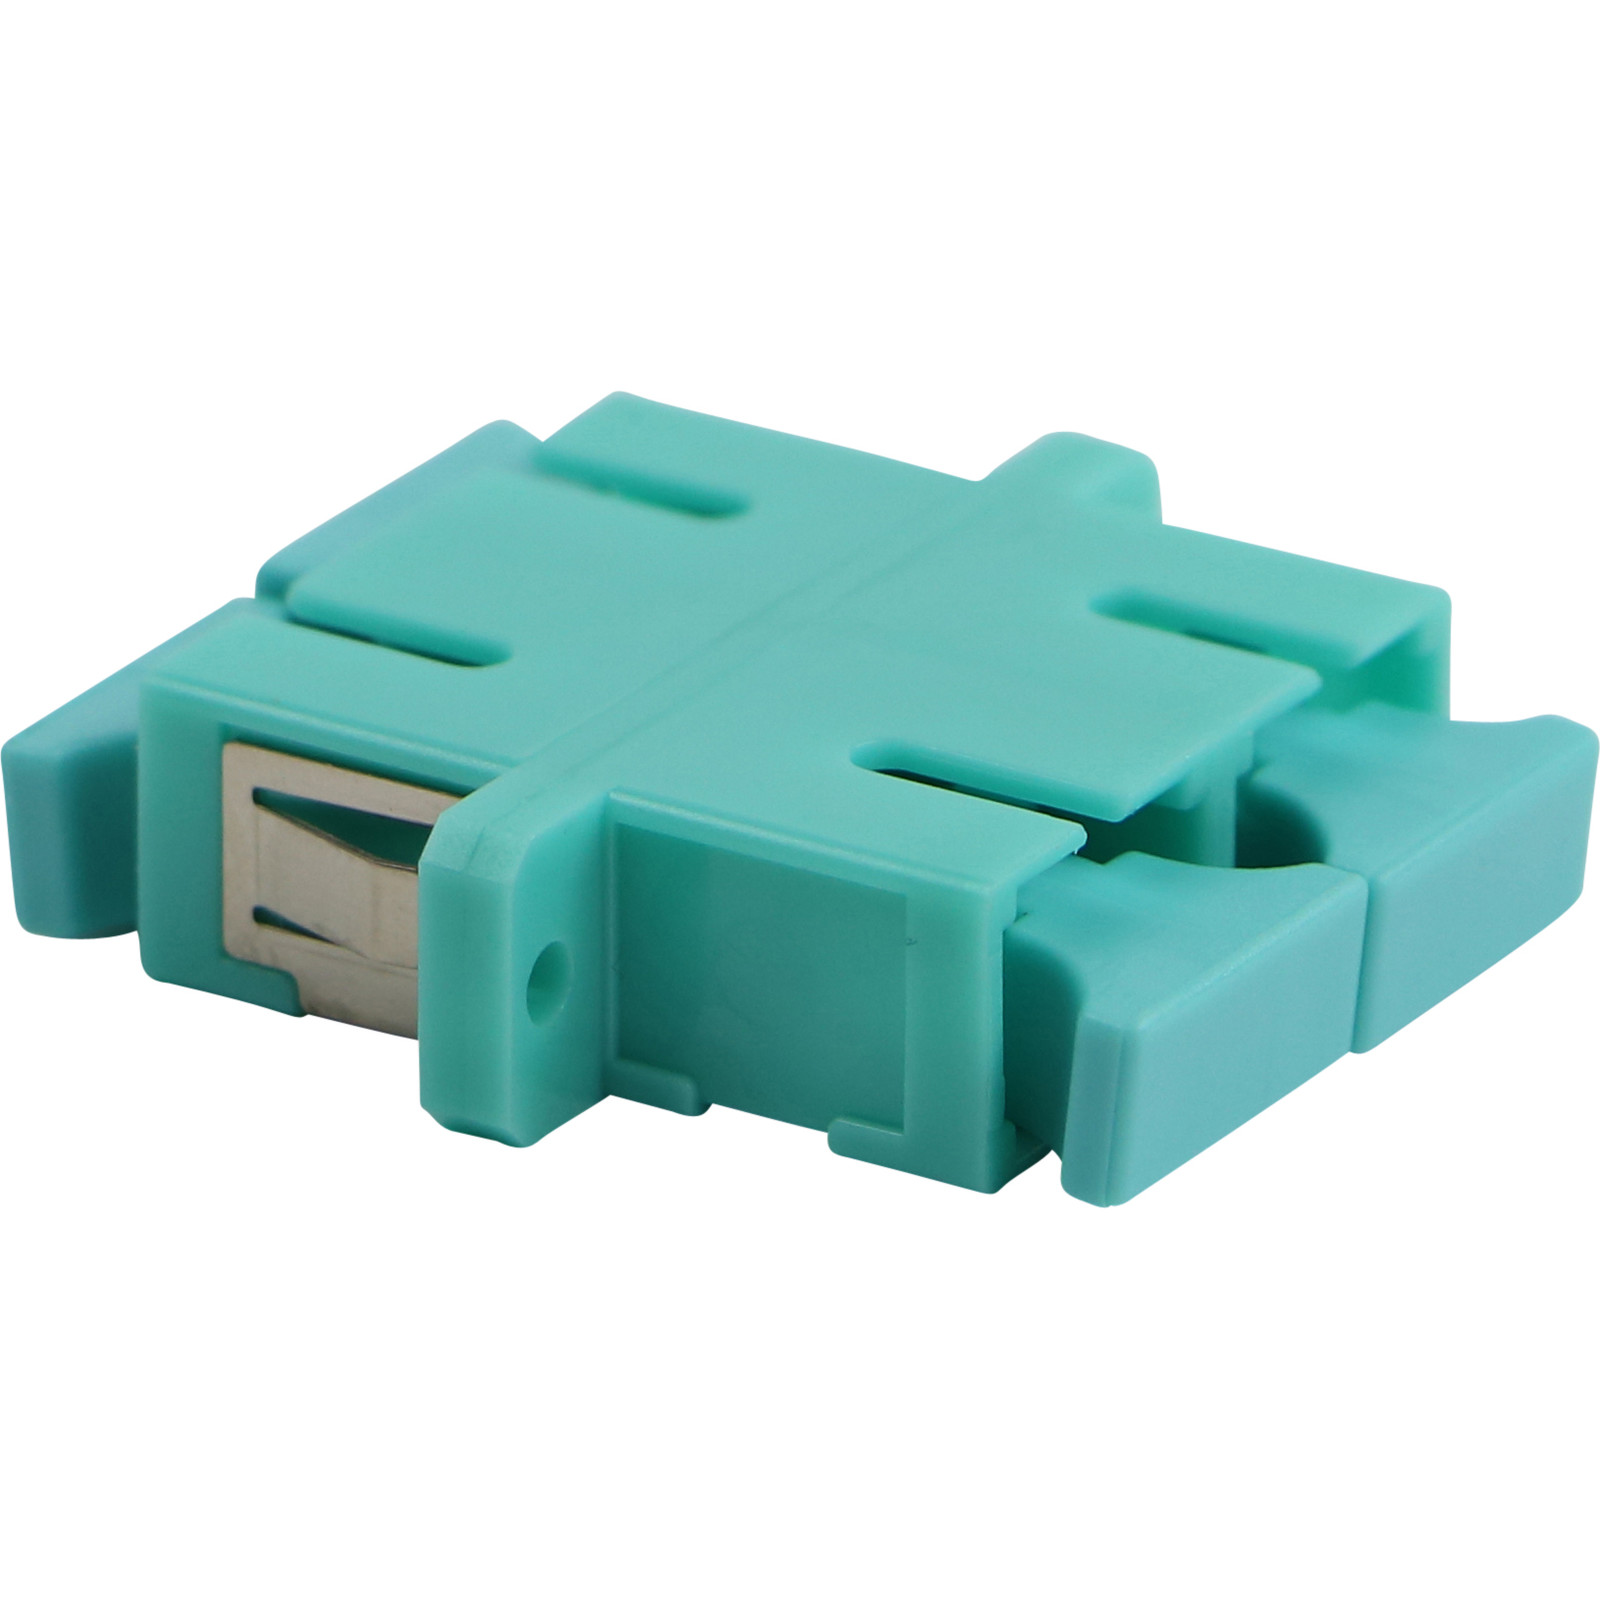 Adaptateur SC duplex, multimode Enbeam - turquoise (lot de 5)